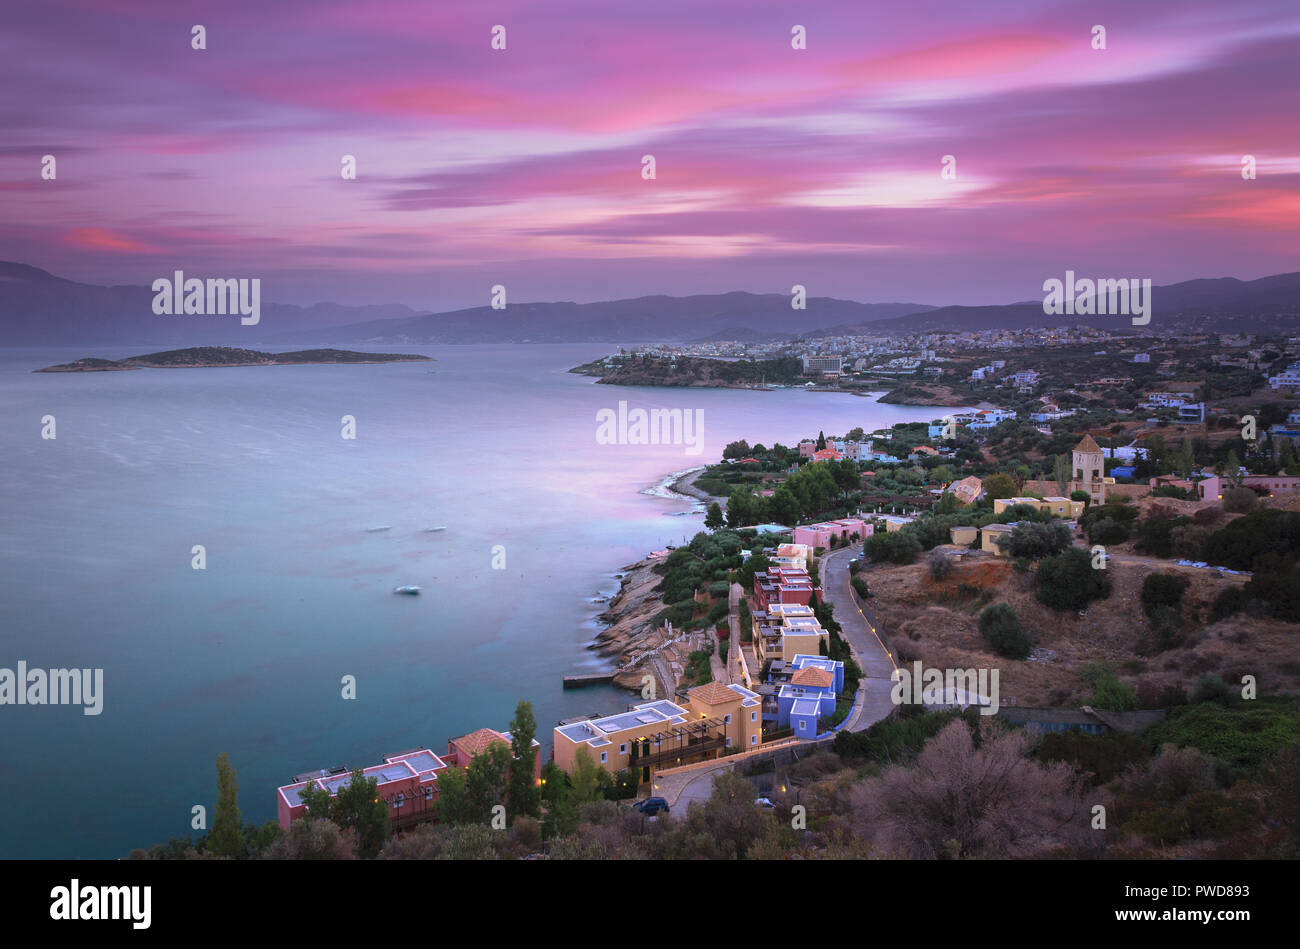 High point panoramique au coucher du soleil Vue de la pittoresque Golfe de Mirambello, avec l'île d''Agioi Pantes et la ville d'Agios Nikolaos, Crète, Gree Banque D'Images